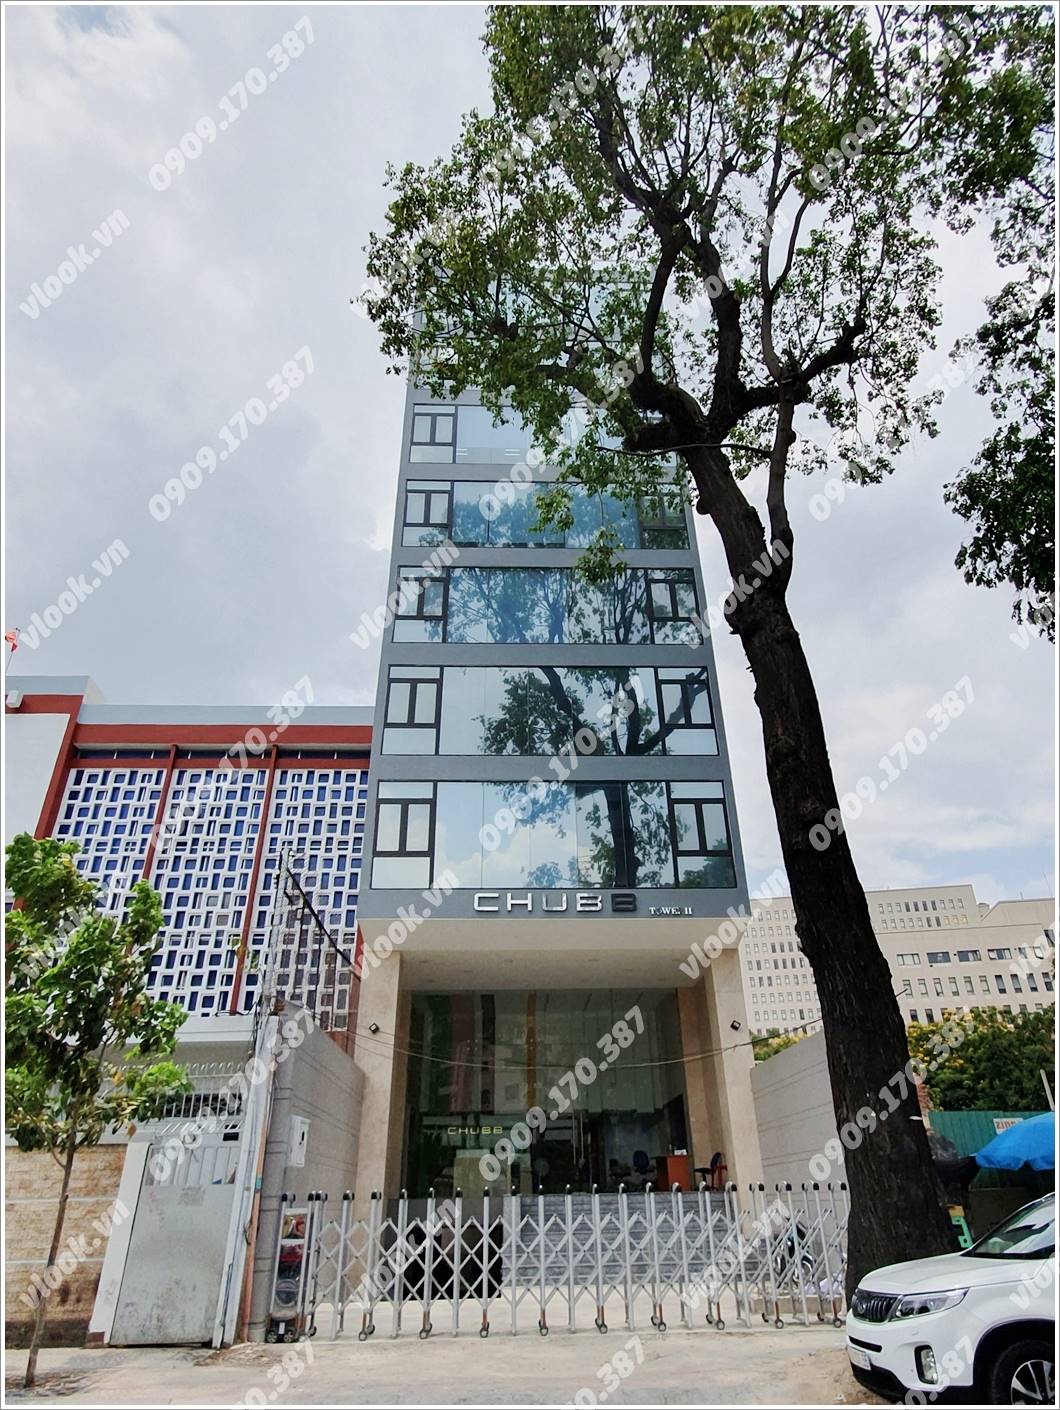 Mặt trước cao ốc cho thuê văn phòng Chubb tower 2 Nguyễn Trãi, Nguyễn Trãi, Quận 1, TPHCM - vlook.vn